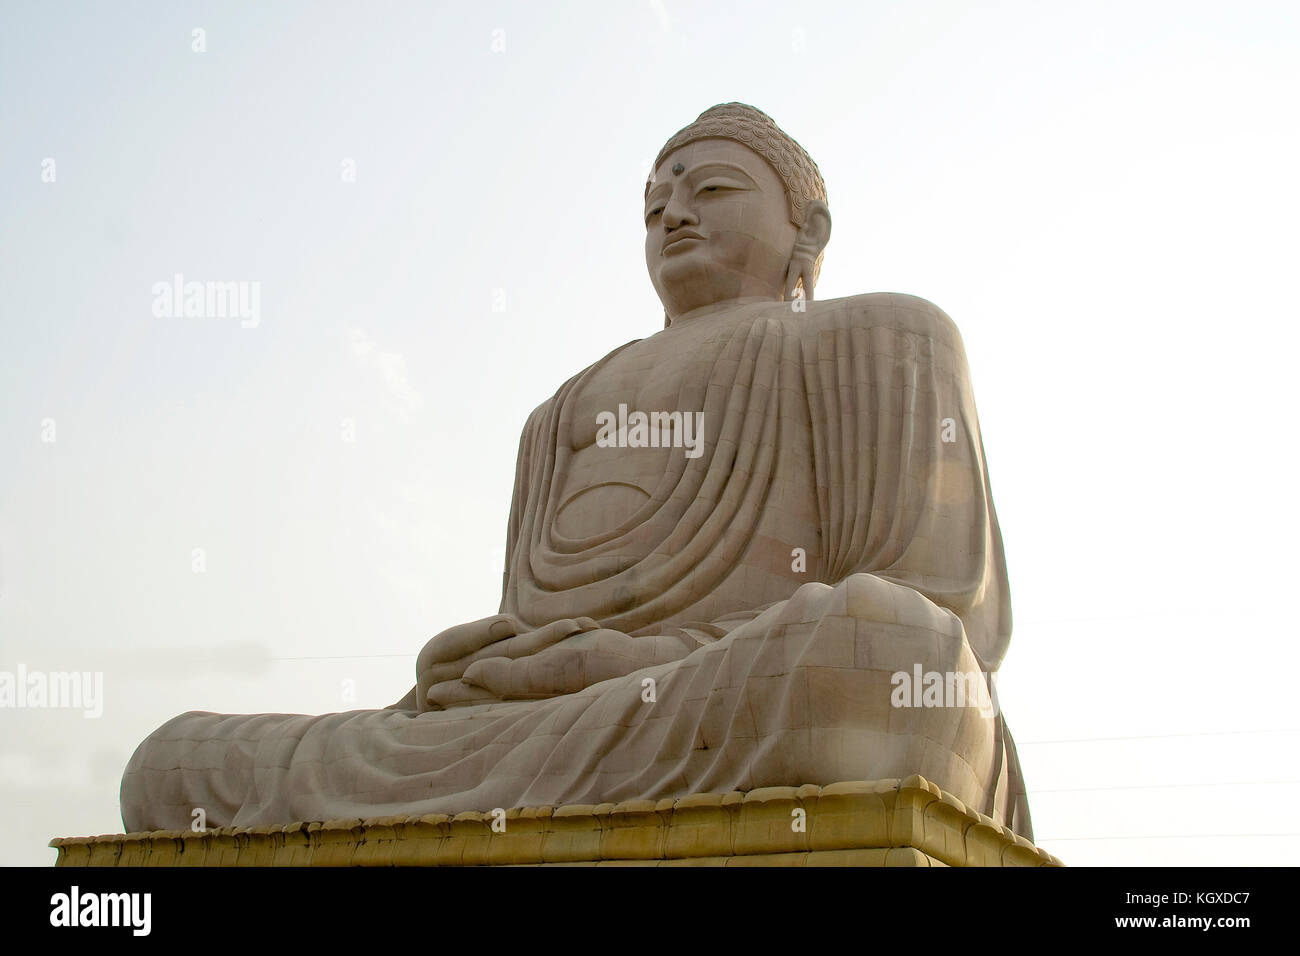 Riesige Statue von Buddha in ruhiger Stimmung, Bodhgaya, Bihar, Indien, Asien Stockfoto